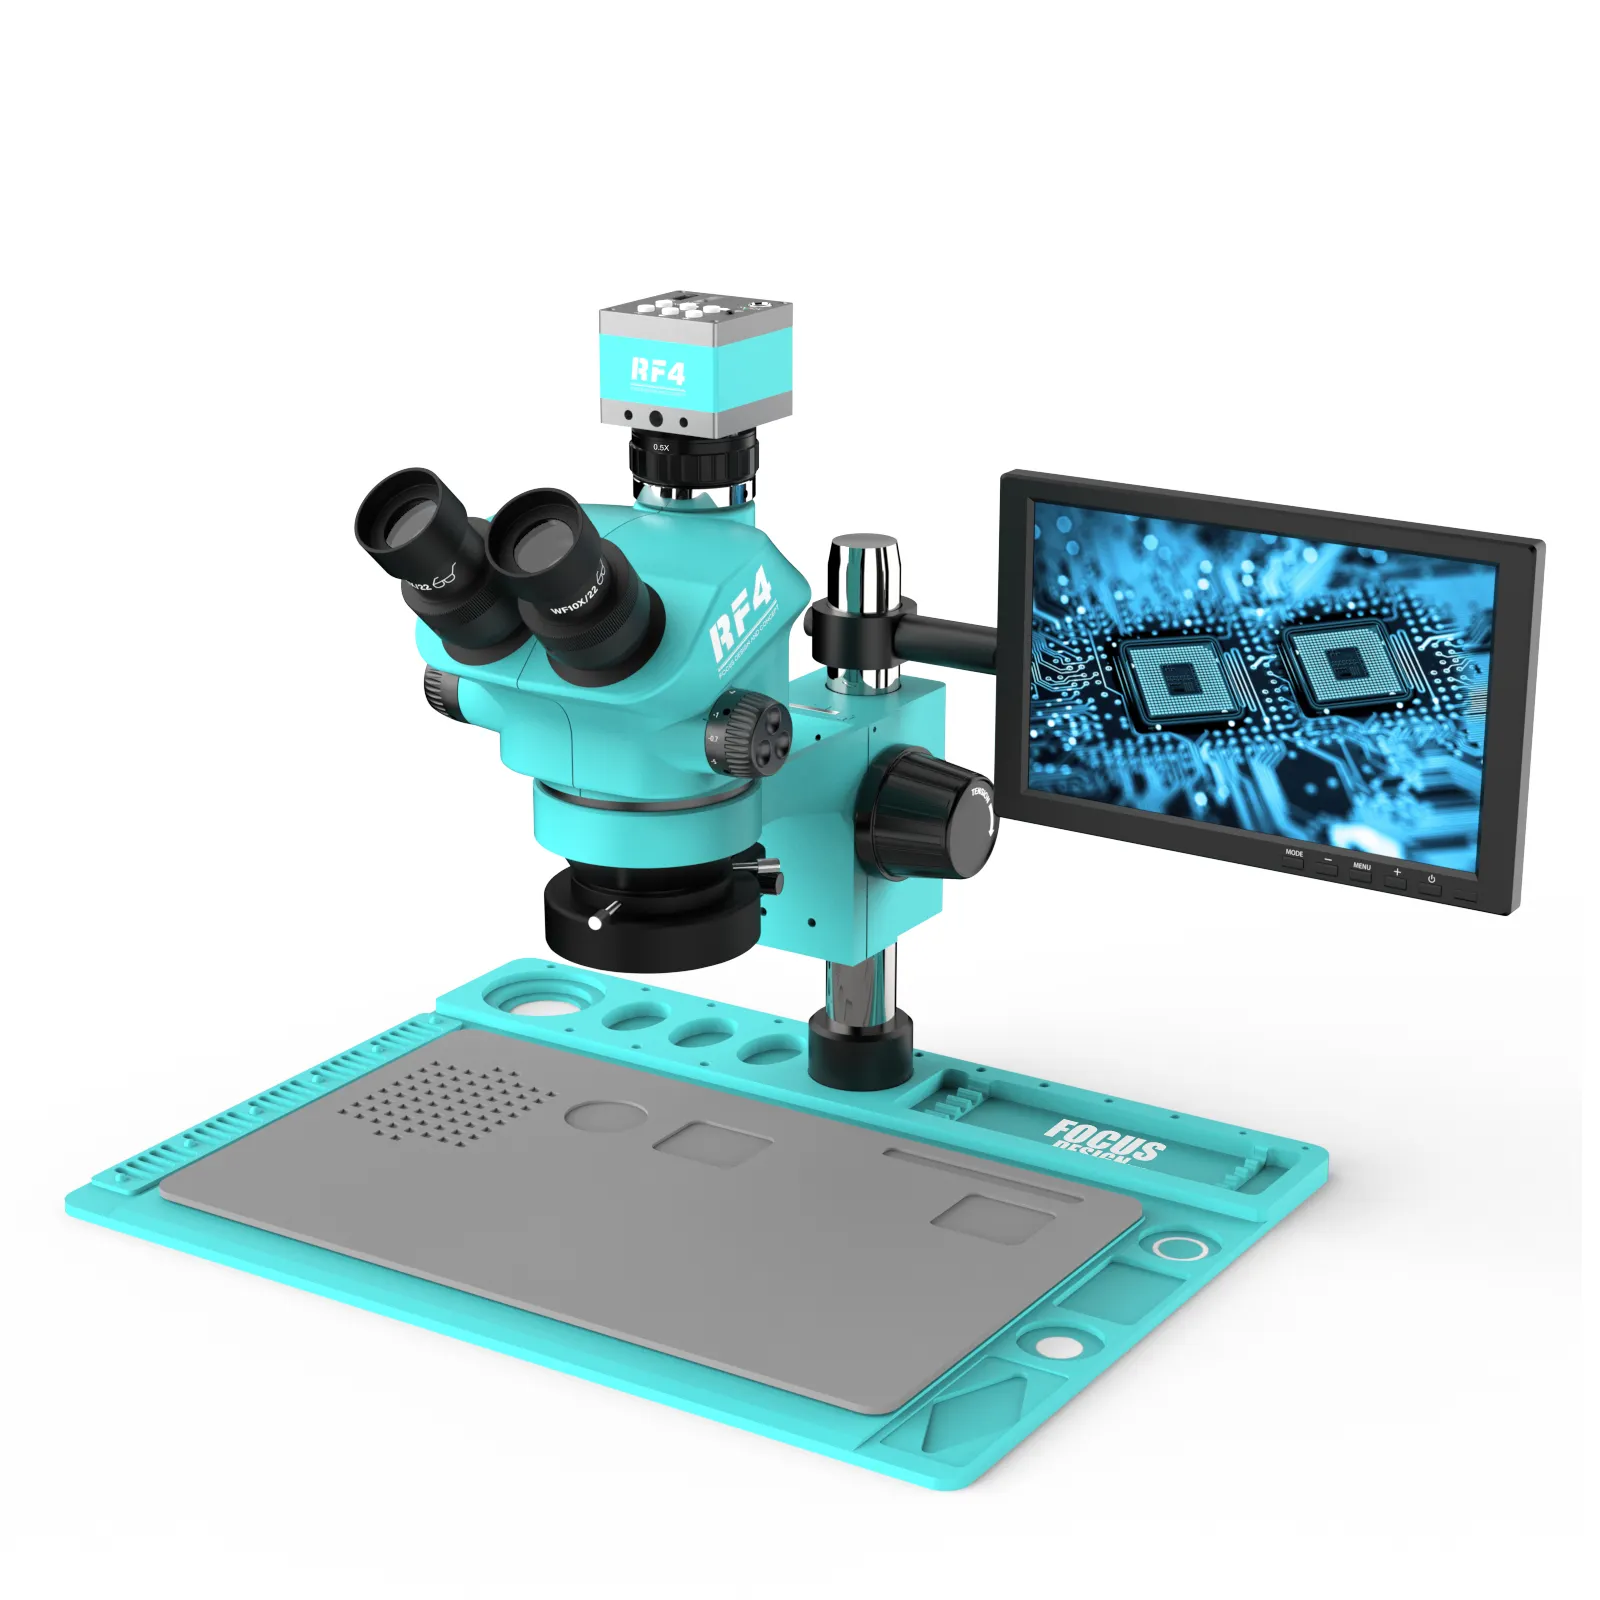 RF4 RF-7050TVD2-2KC1-S010 Microscope oculaire trinoculaire pivotant à 360 degrés Moniteur de 10 pouces pour la réparation de téléphones portables